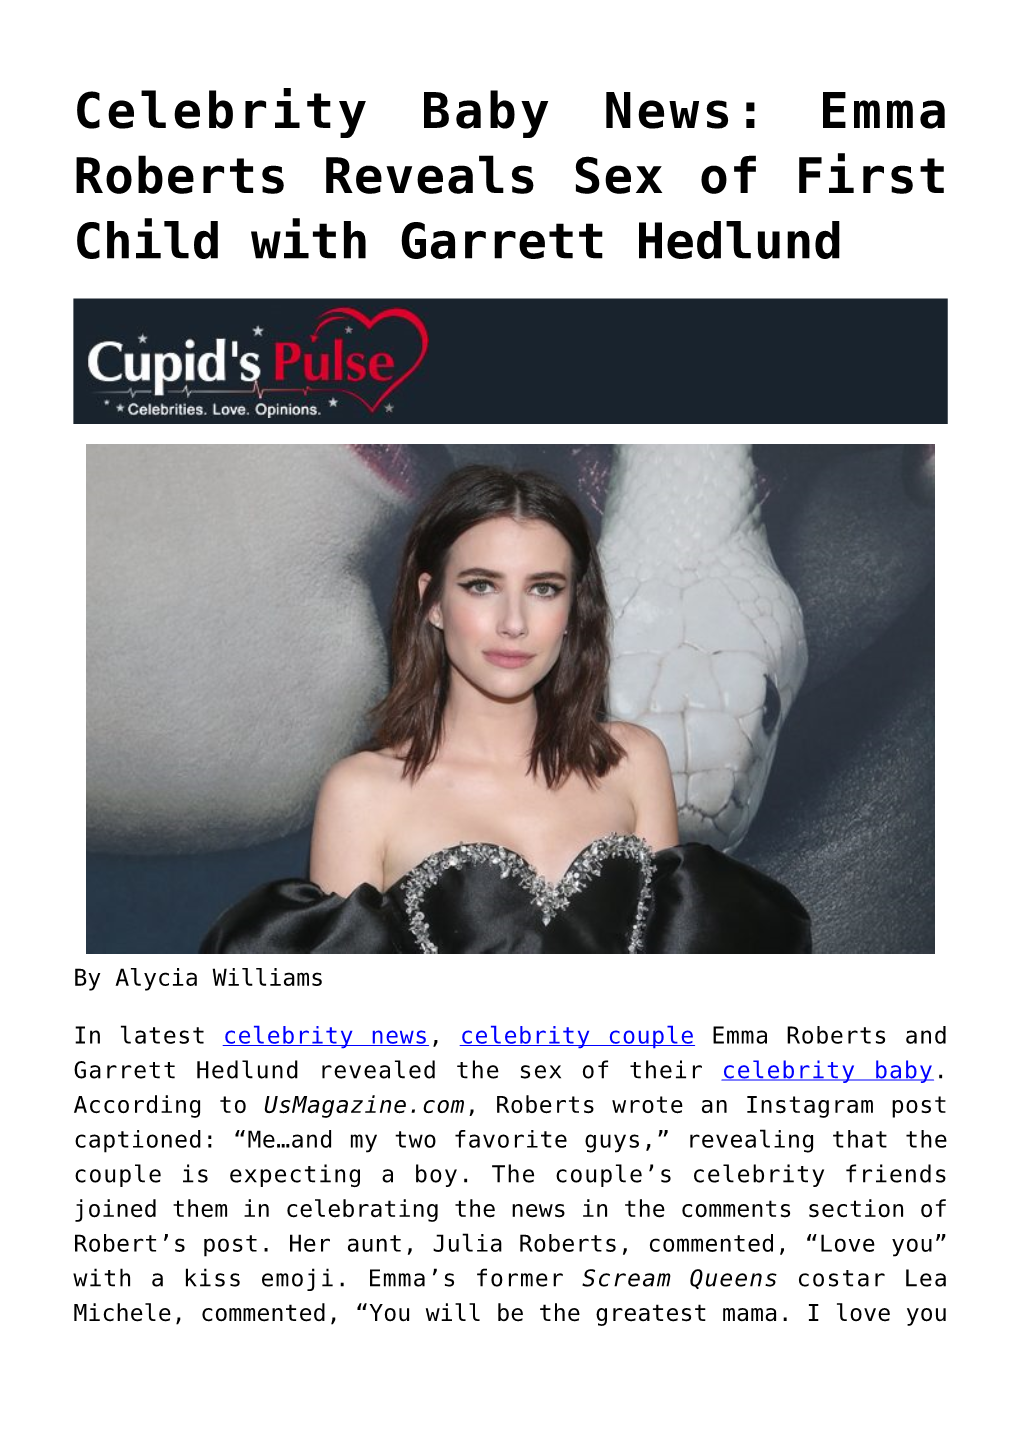 Celebrity Baby News: Emma Roberts Reveals Sex of First Child with Garrett Hedlund